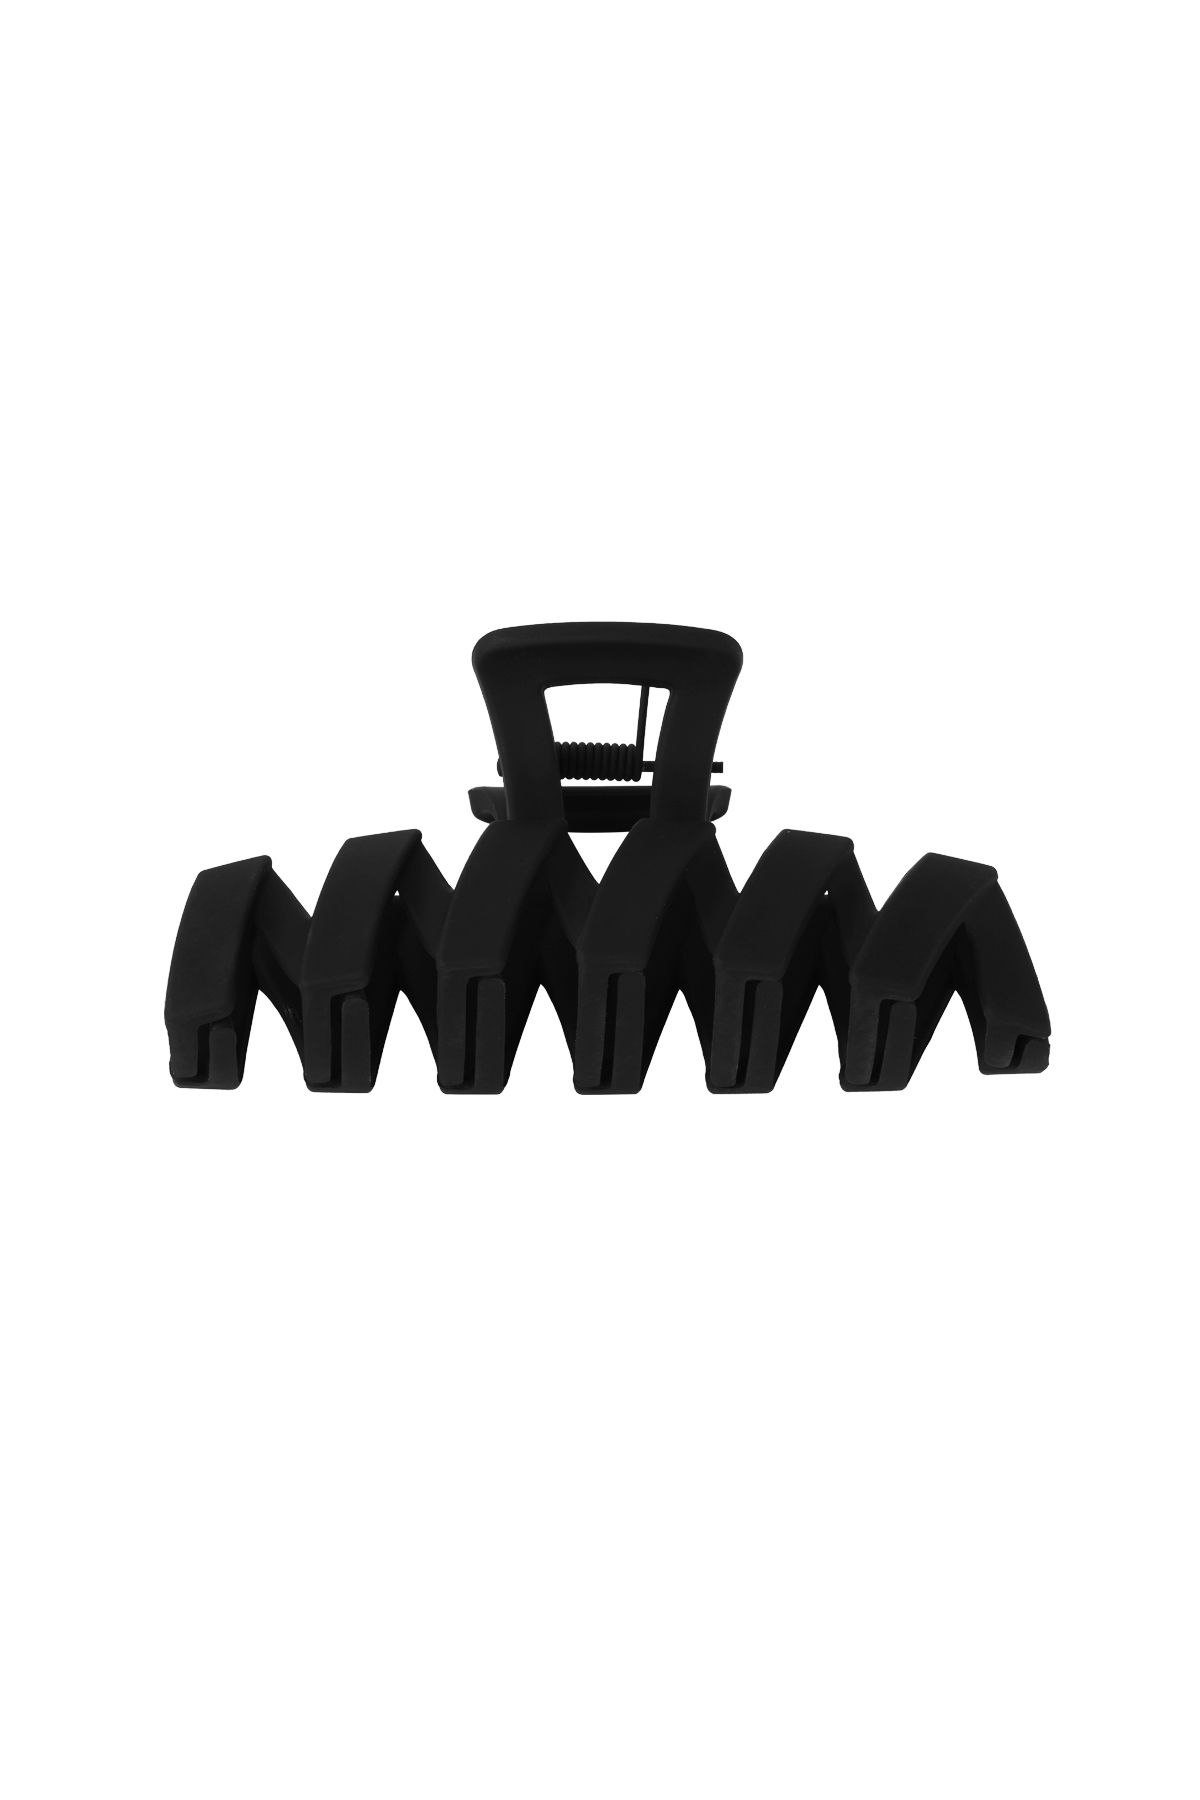 Hair clip zigzag - black Plastic h5 